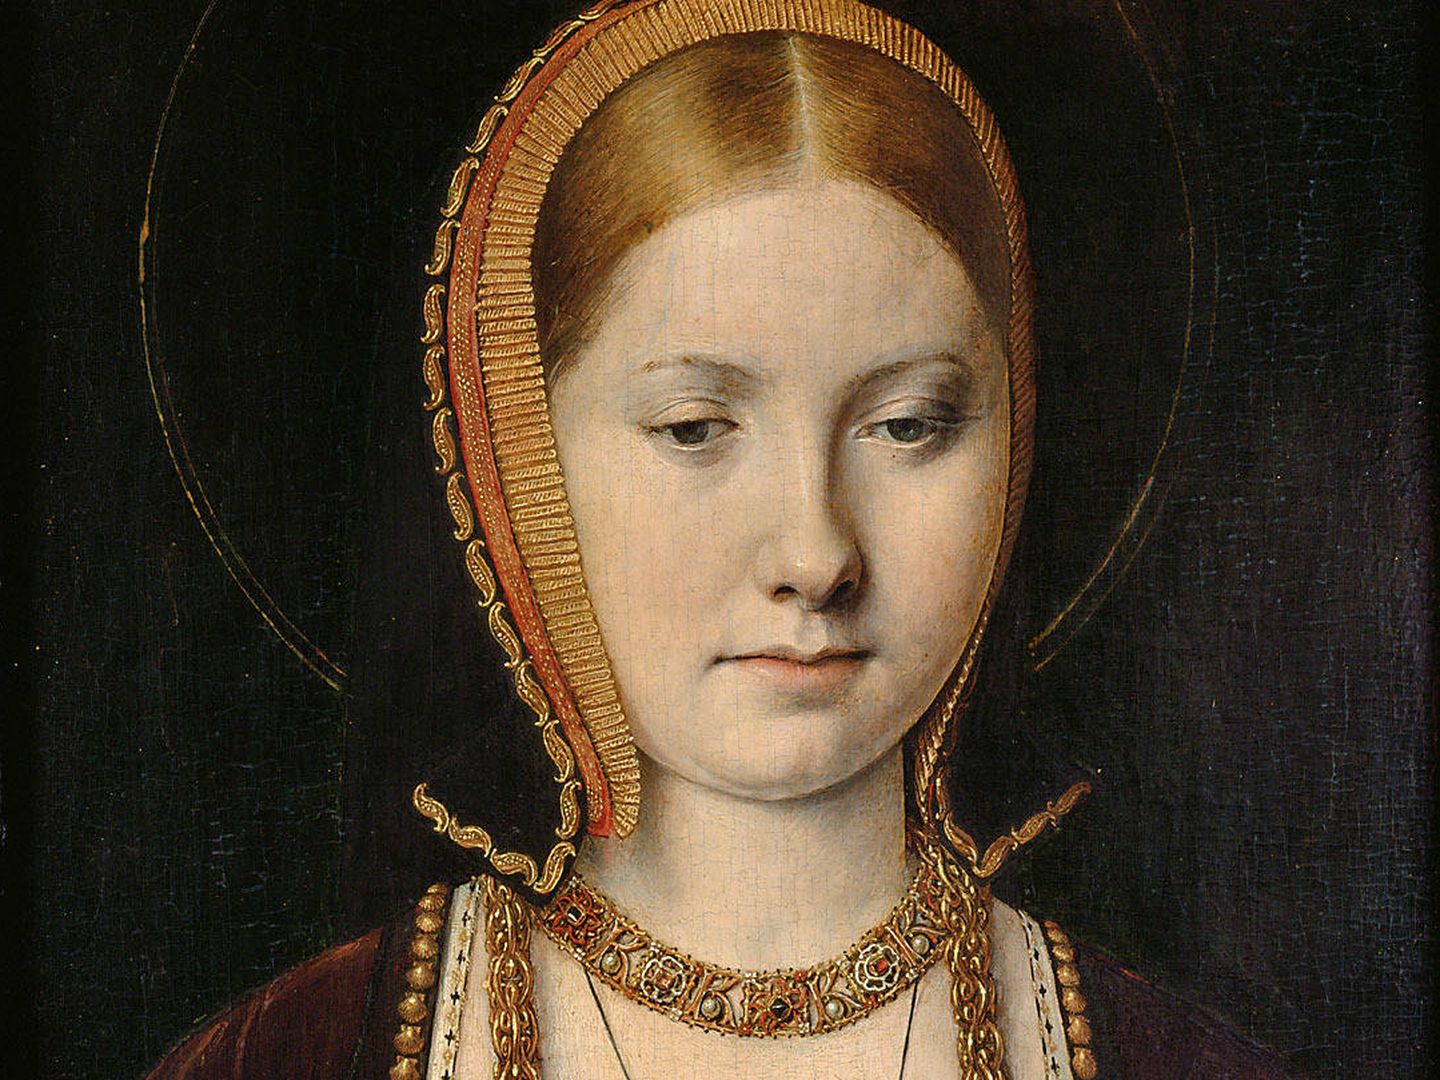 'Retrato de Catalina de Aragón', Michel Sittow, 1514. Kunthistorisches Museum.